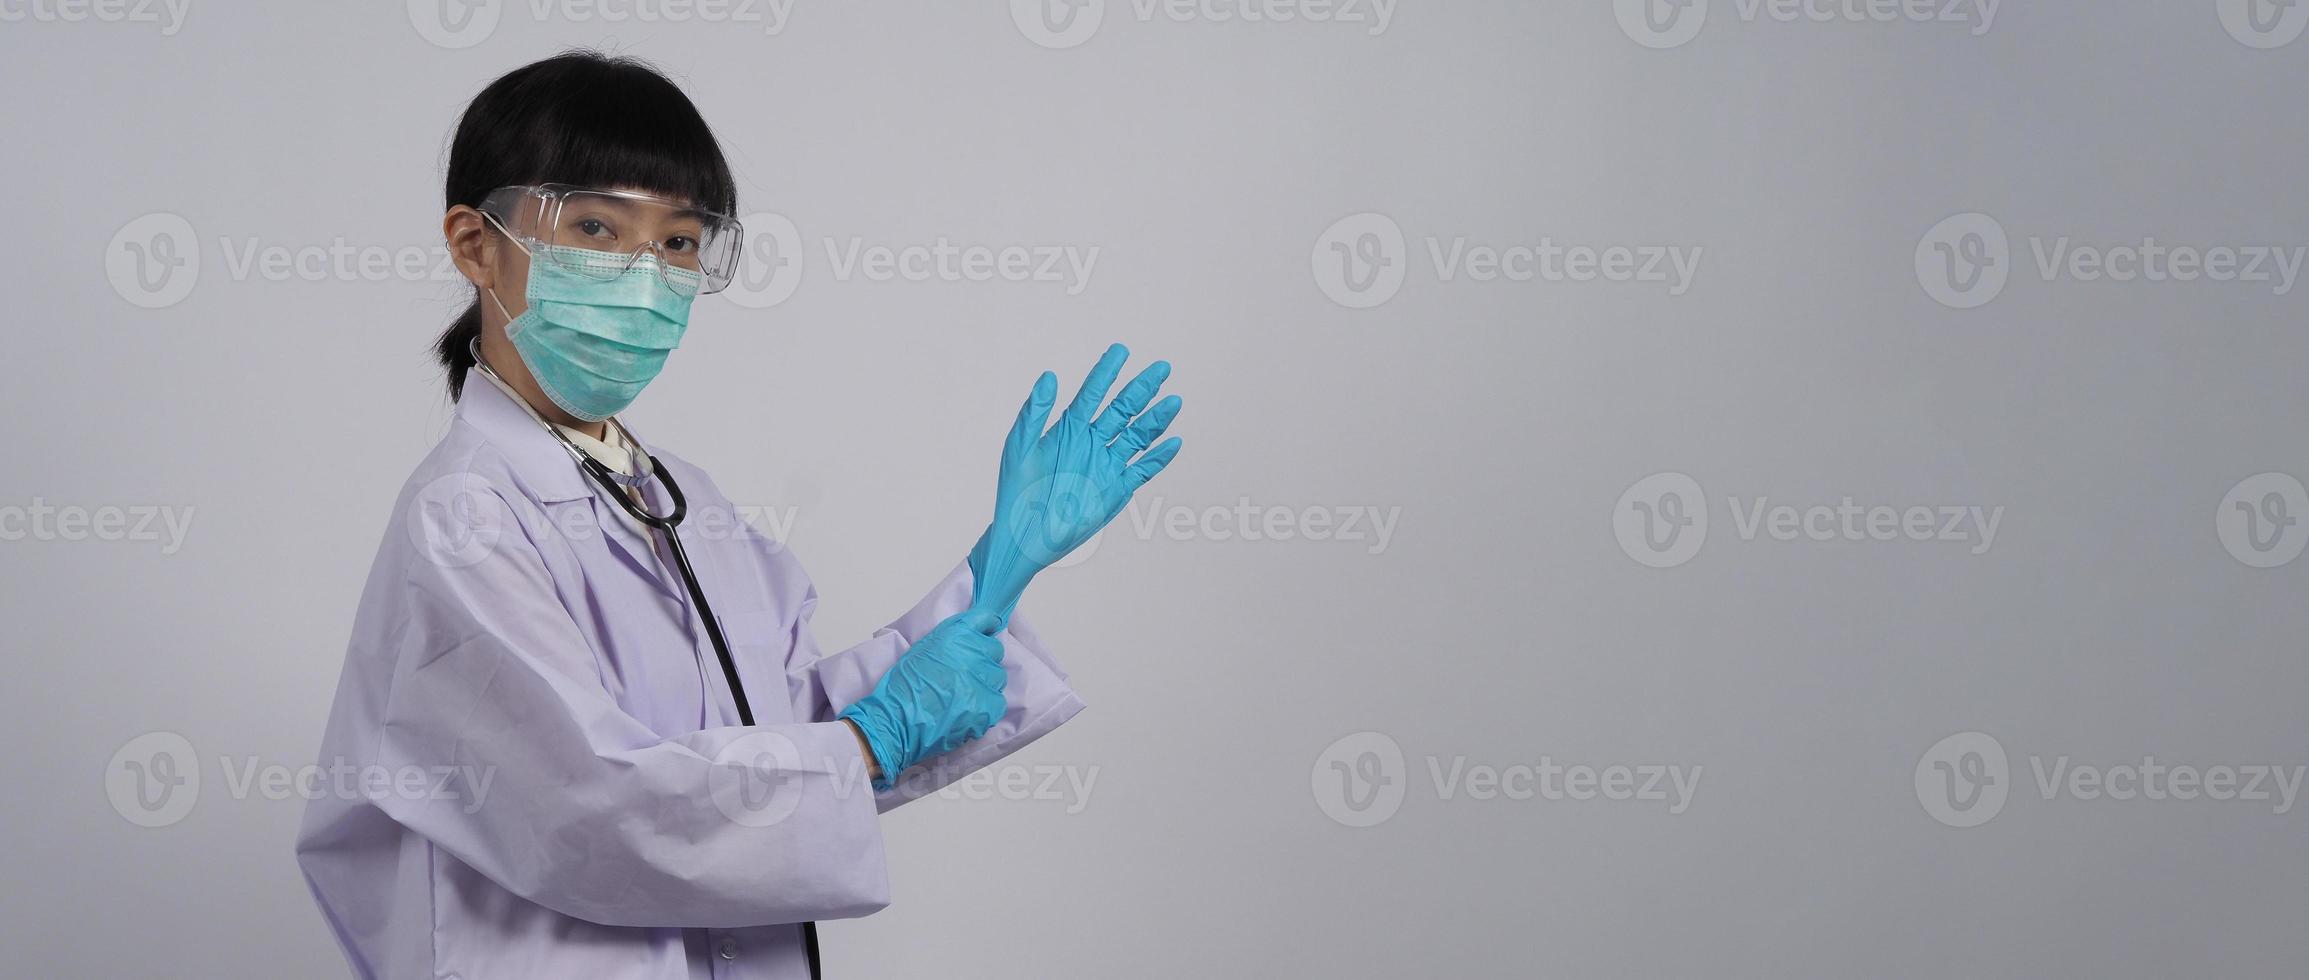 Handschuhe tragen. asiatischer Arzt trägt blauen Nitril-Gummihandschuh. foto